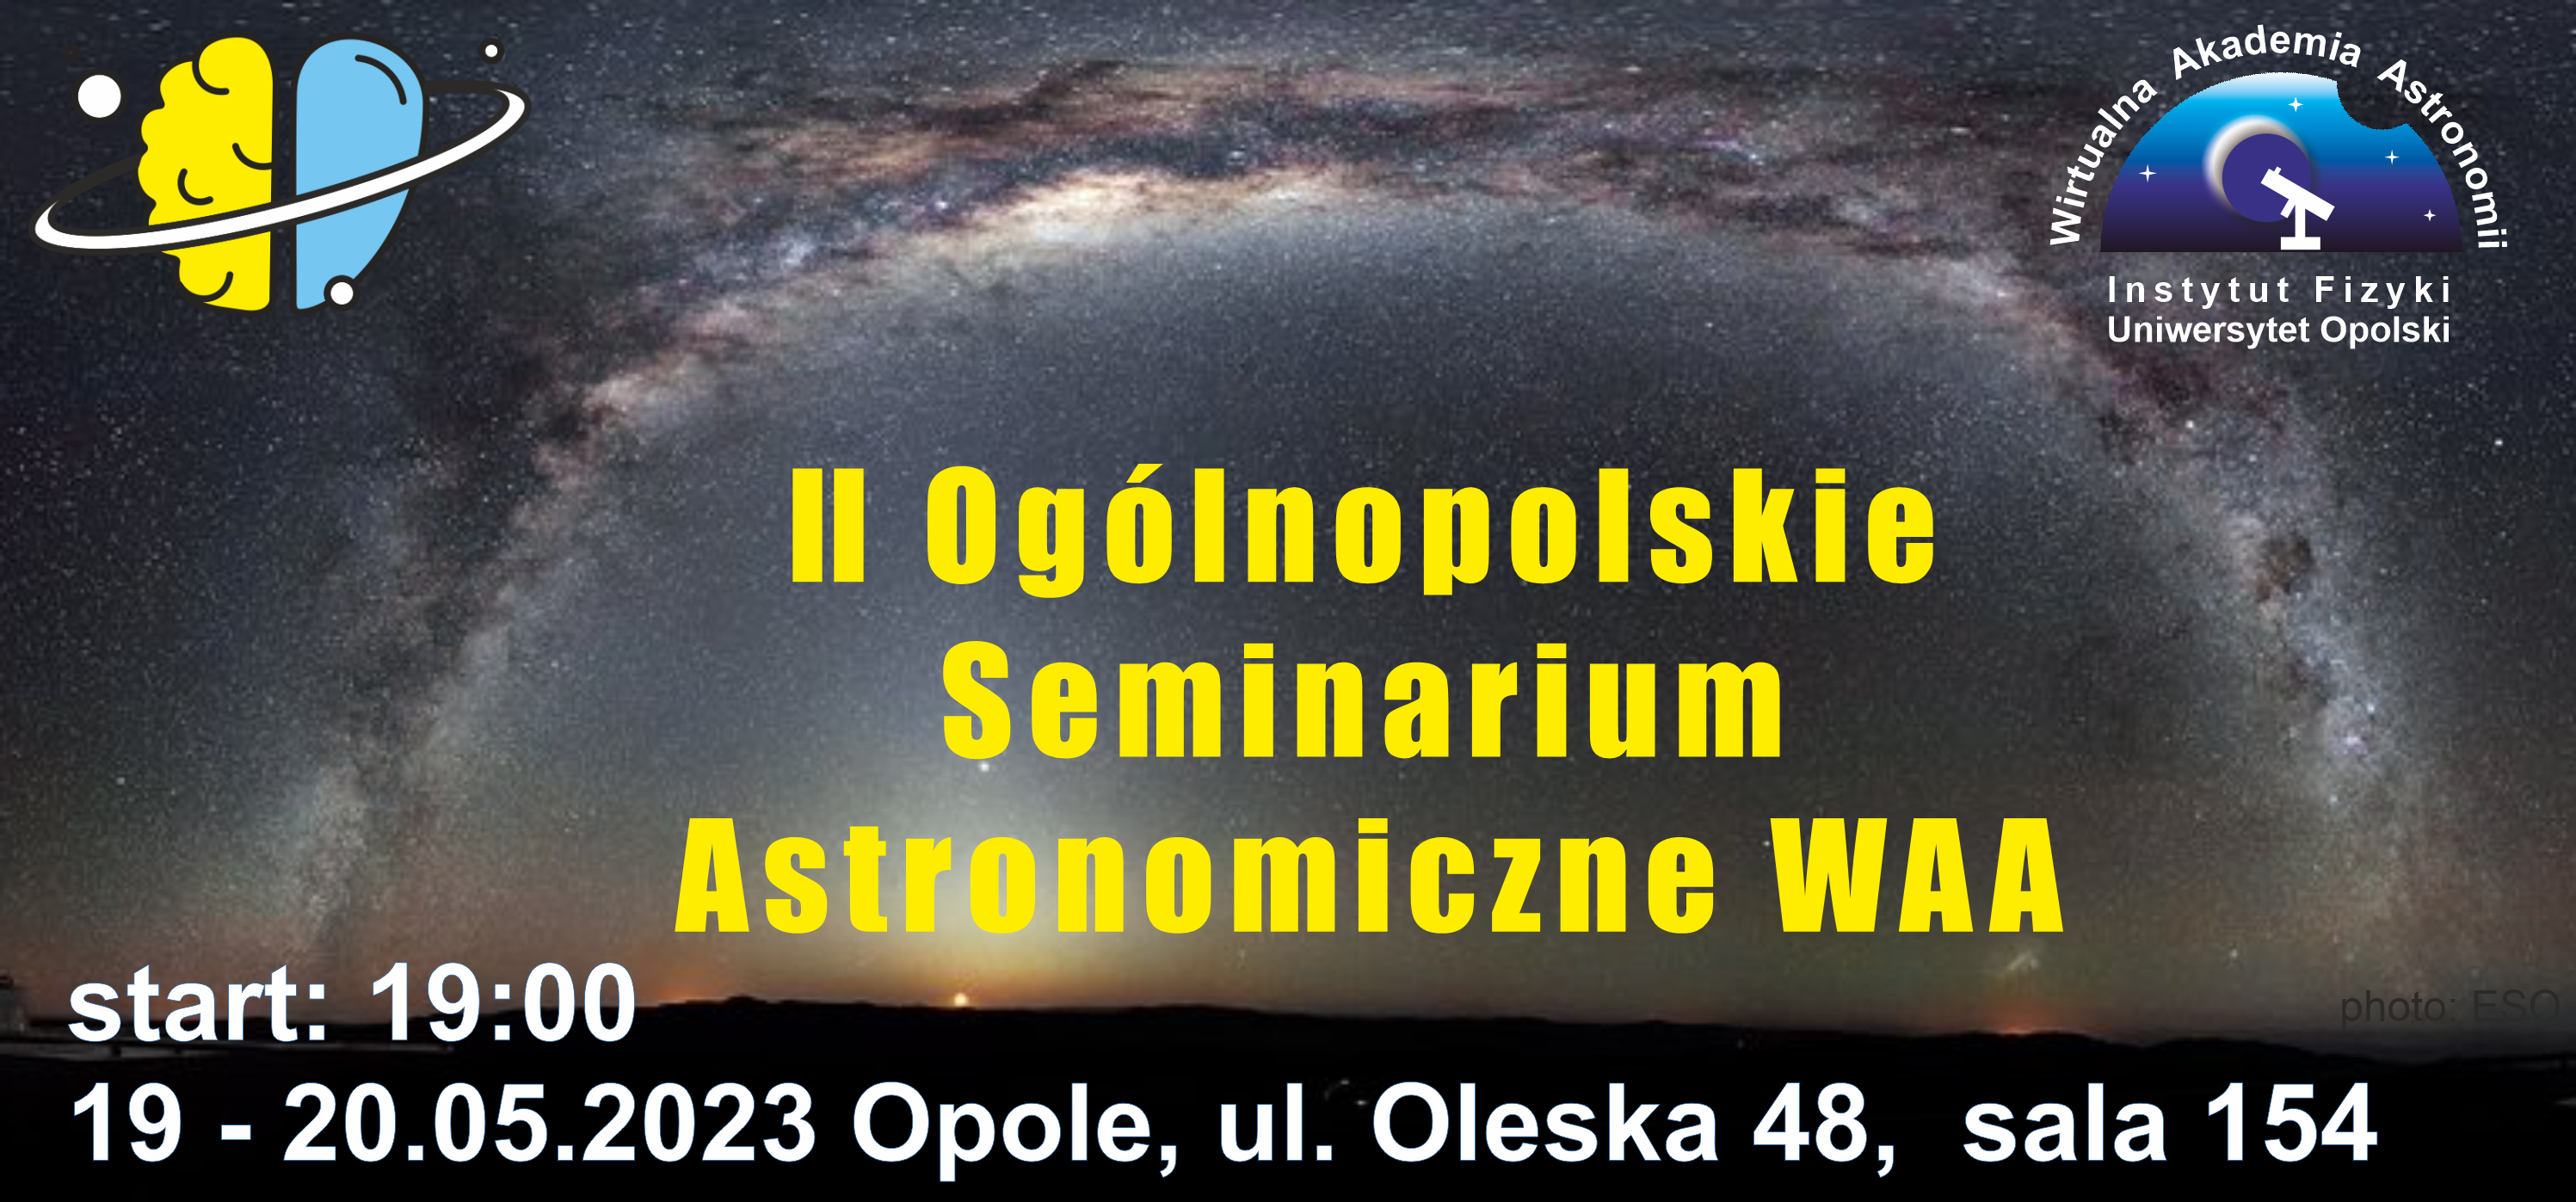 II Ogólnopolskie Seminarium Astronomiczne WAA